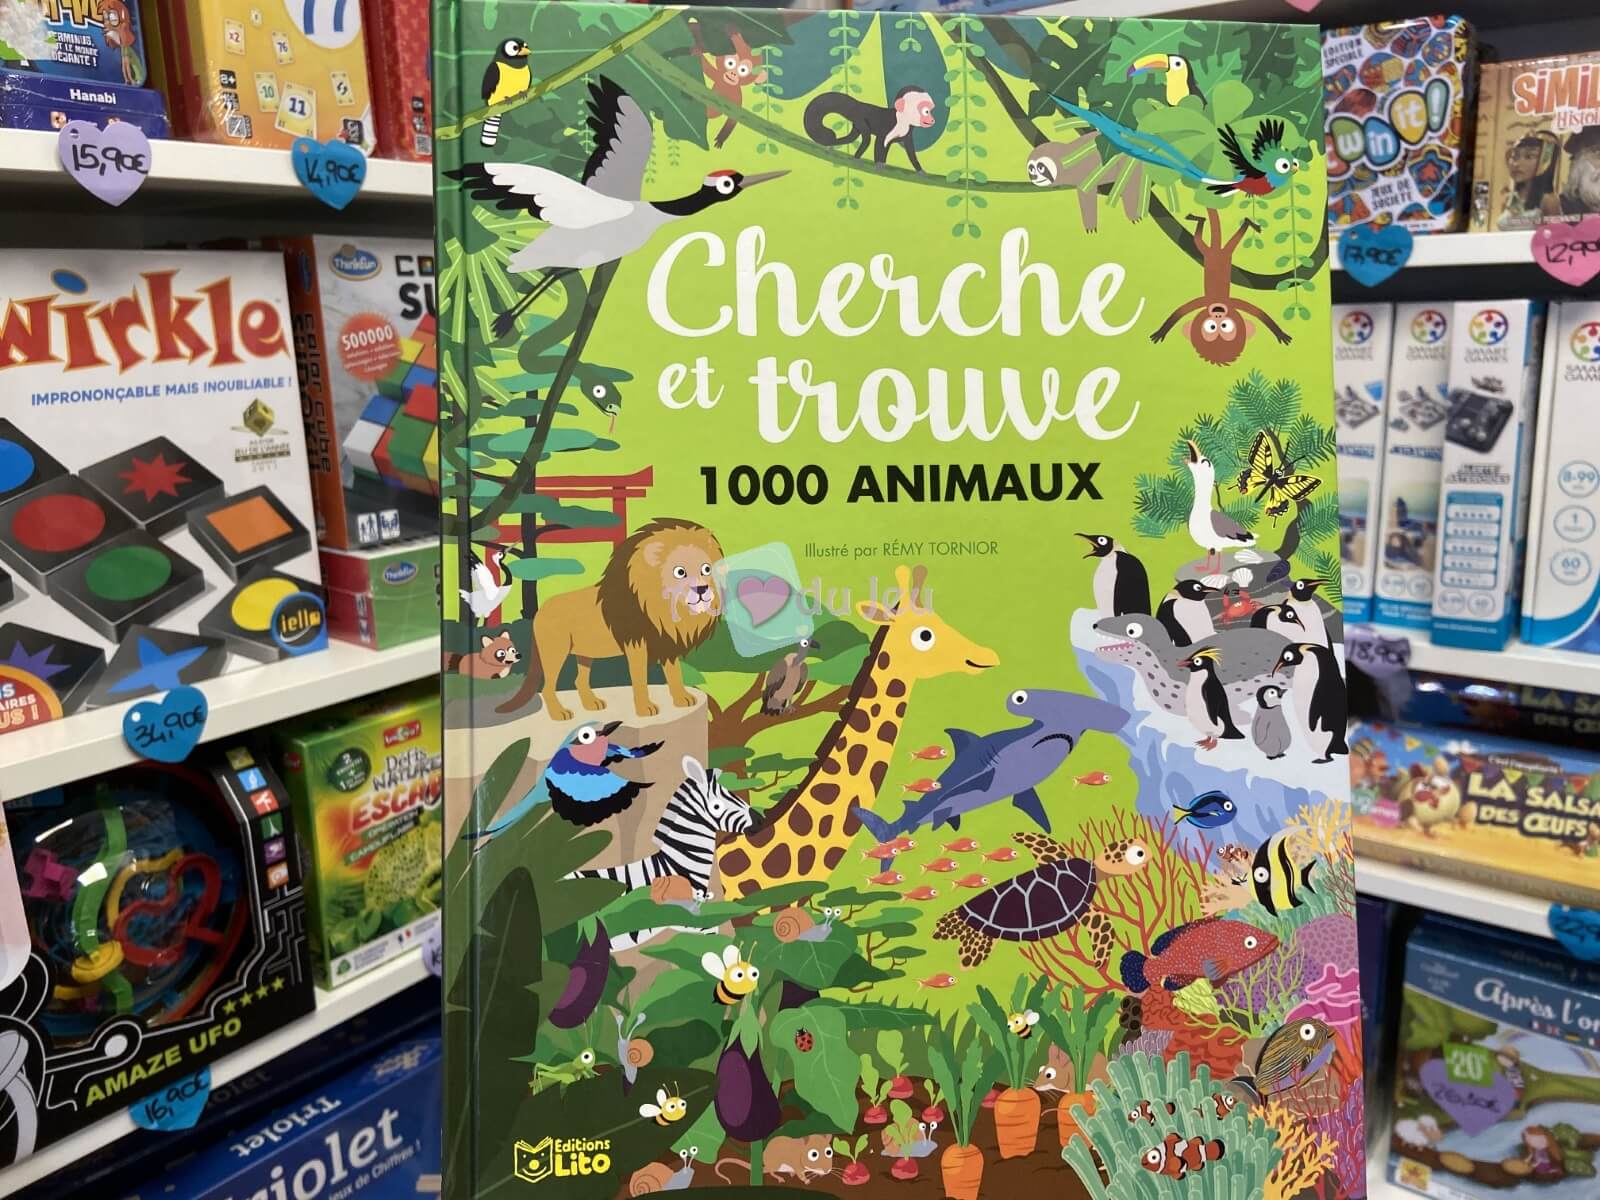 Cherche et Trouve 1000 Animaux Editions Lito